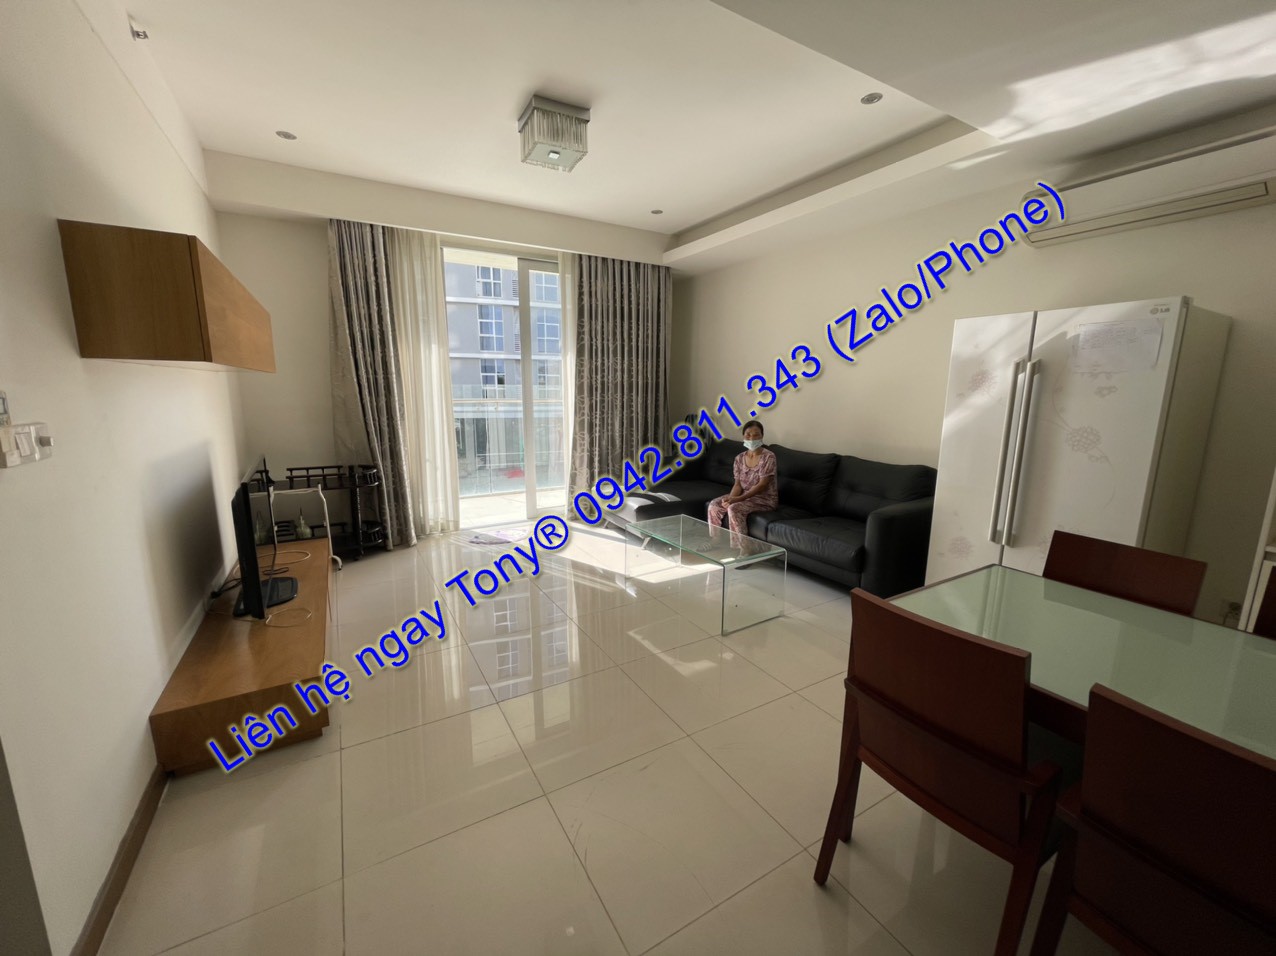 Thuê căn hộ 2 phòng ngủ tầng cao full tiện nghi Sài Gòn Aiprort PLaza chỉ 15 Triệu Tel 0942.811.343 Tony (Zalo/Phone) đi xem